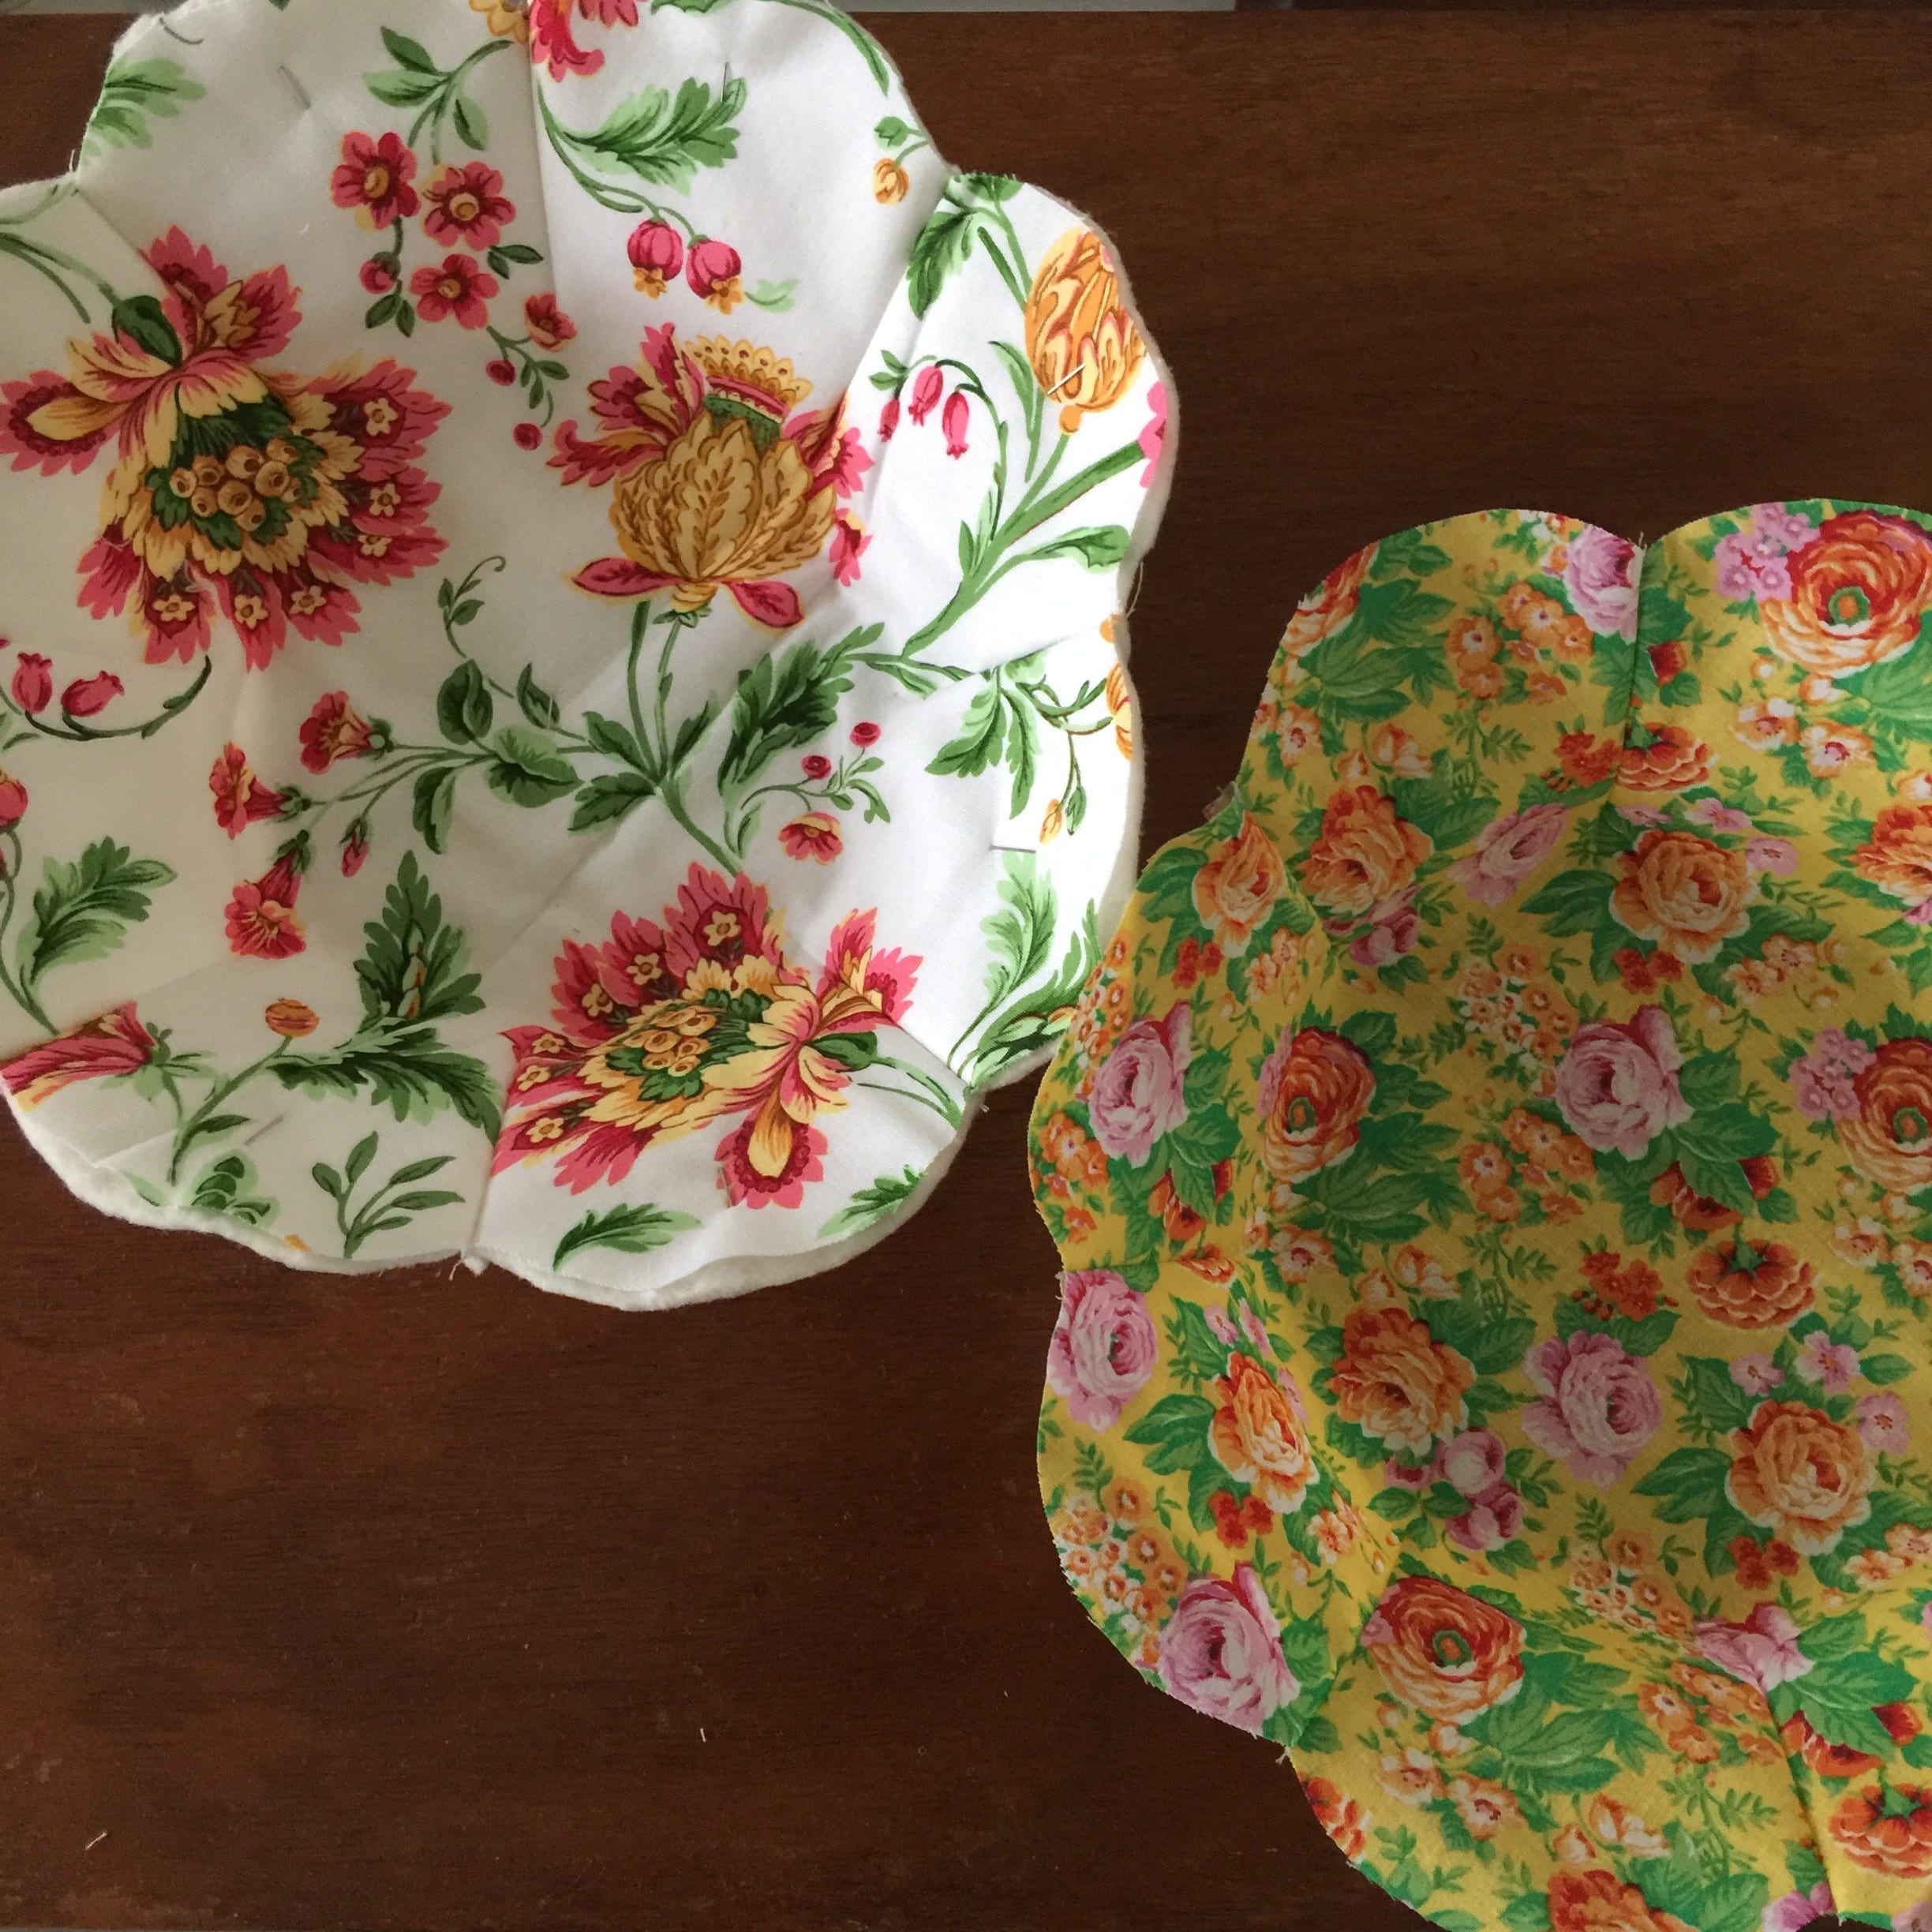 Flower bowl cozy: Crochet pattern